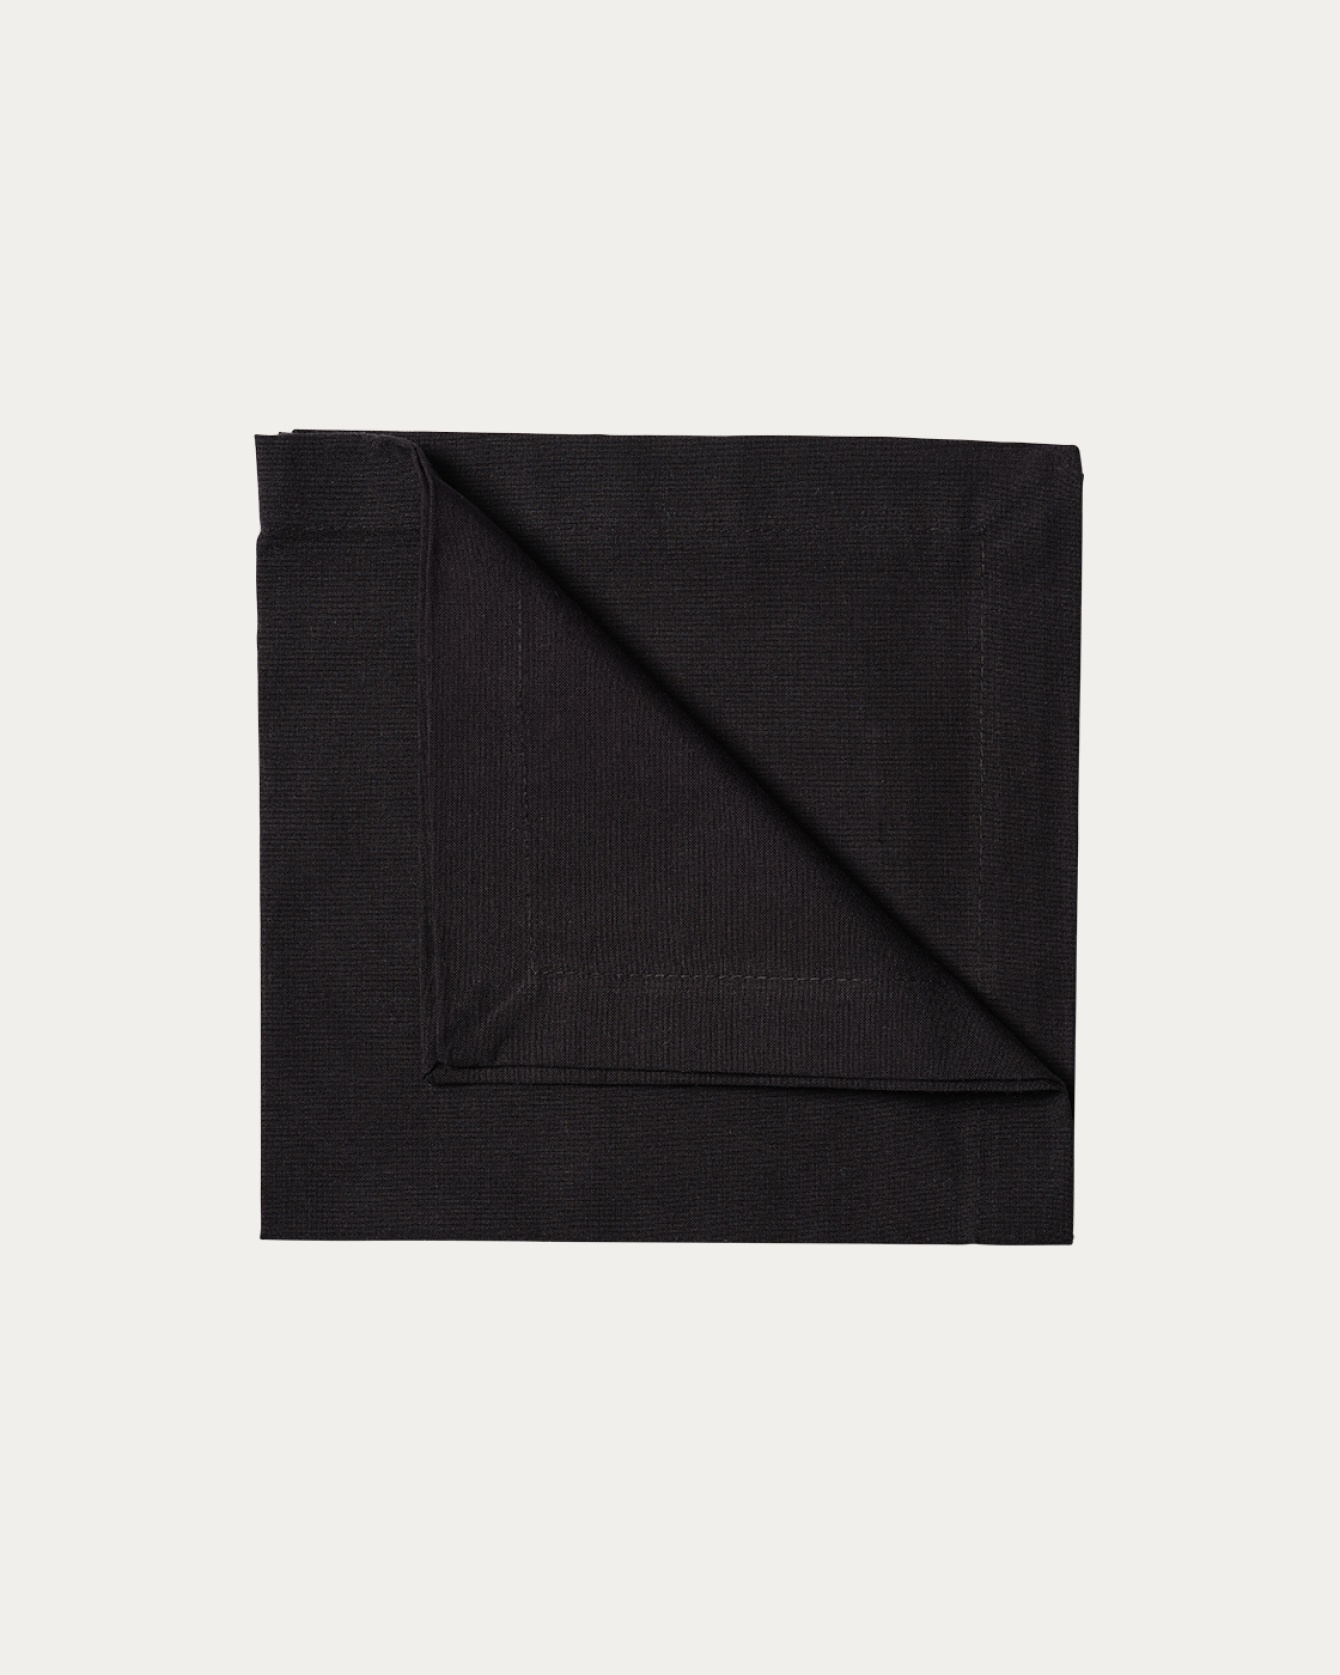 Image du produit serviette de table ROBERT noir en coton doux de LINUM DESIGN. Taille 45 x 45 cm et vendu en lot de 4.